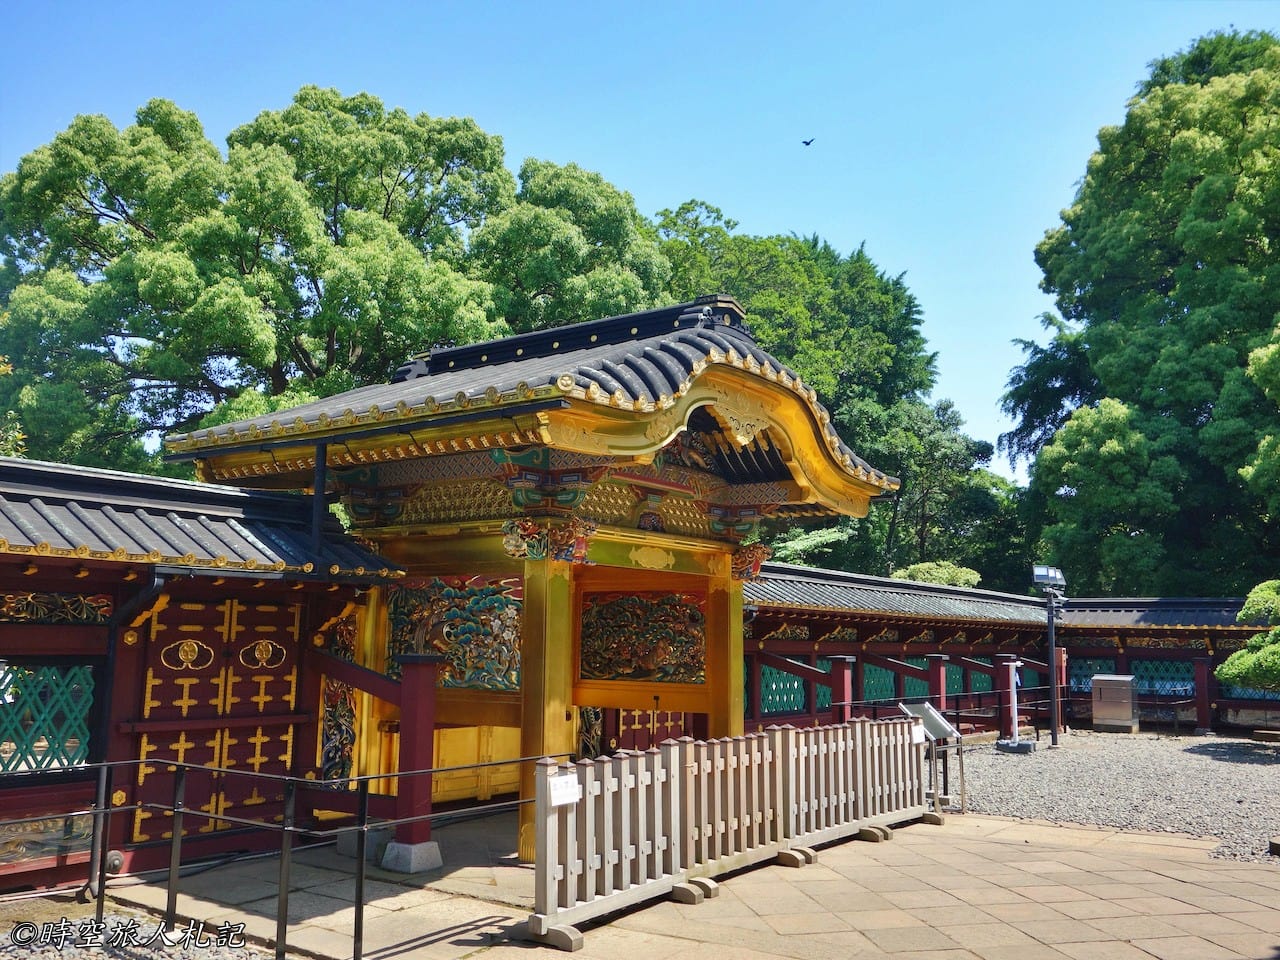 上野公園,上野東照宮,花園稻荷神社,五重塔,不忍池 7